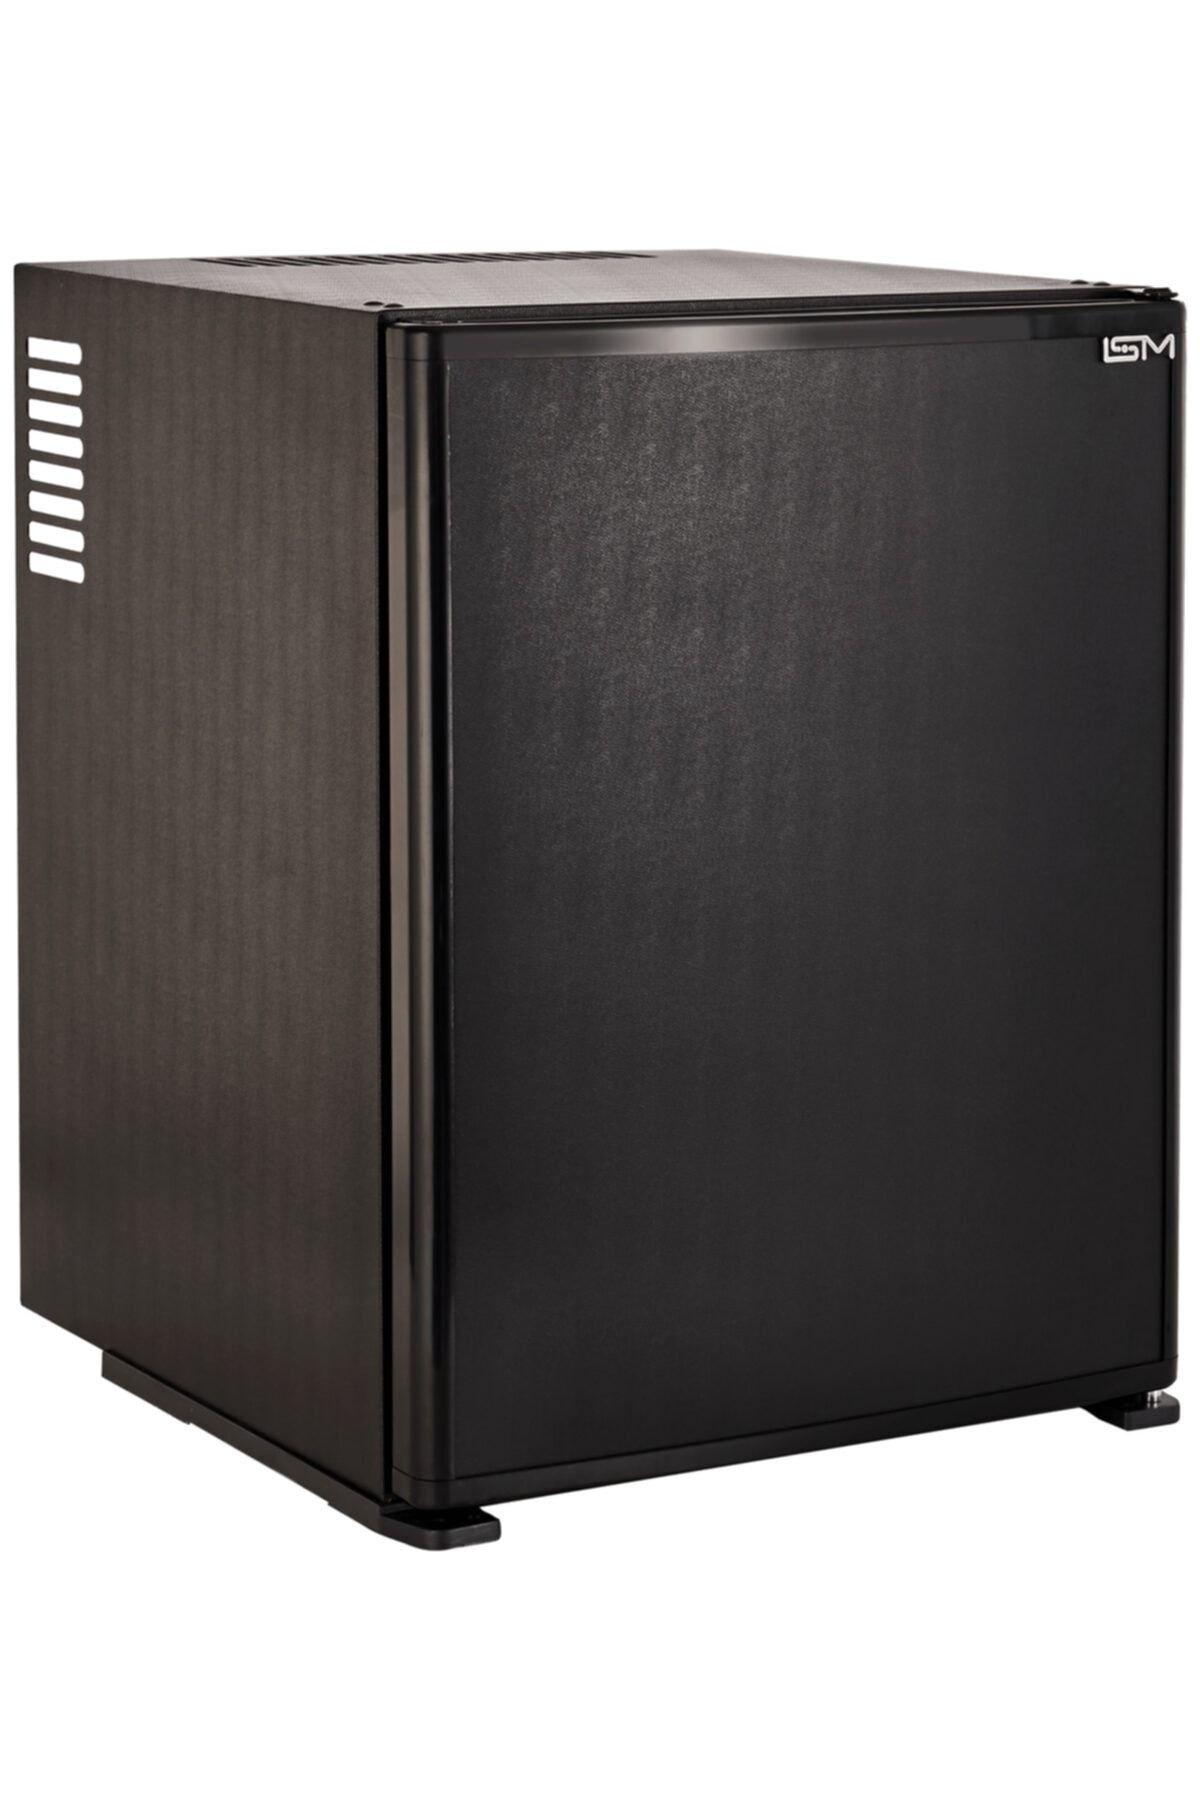 ISM Siyah Blok Kapı 40 Litre Platin Seri Led Aydınlatmalı Minibar Mini Buzdolabı Sm-40